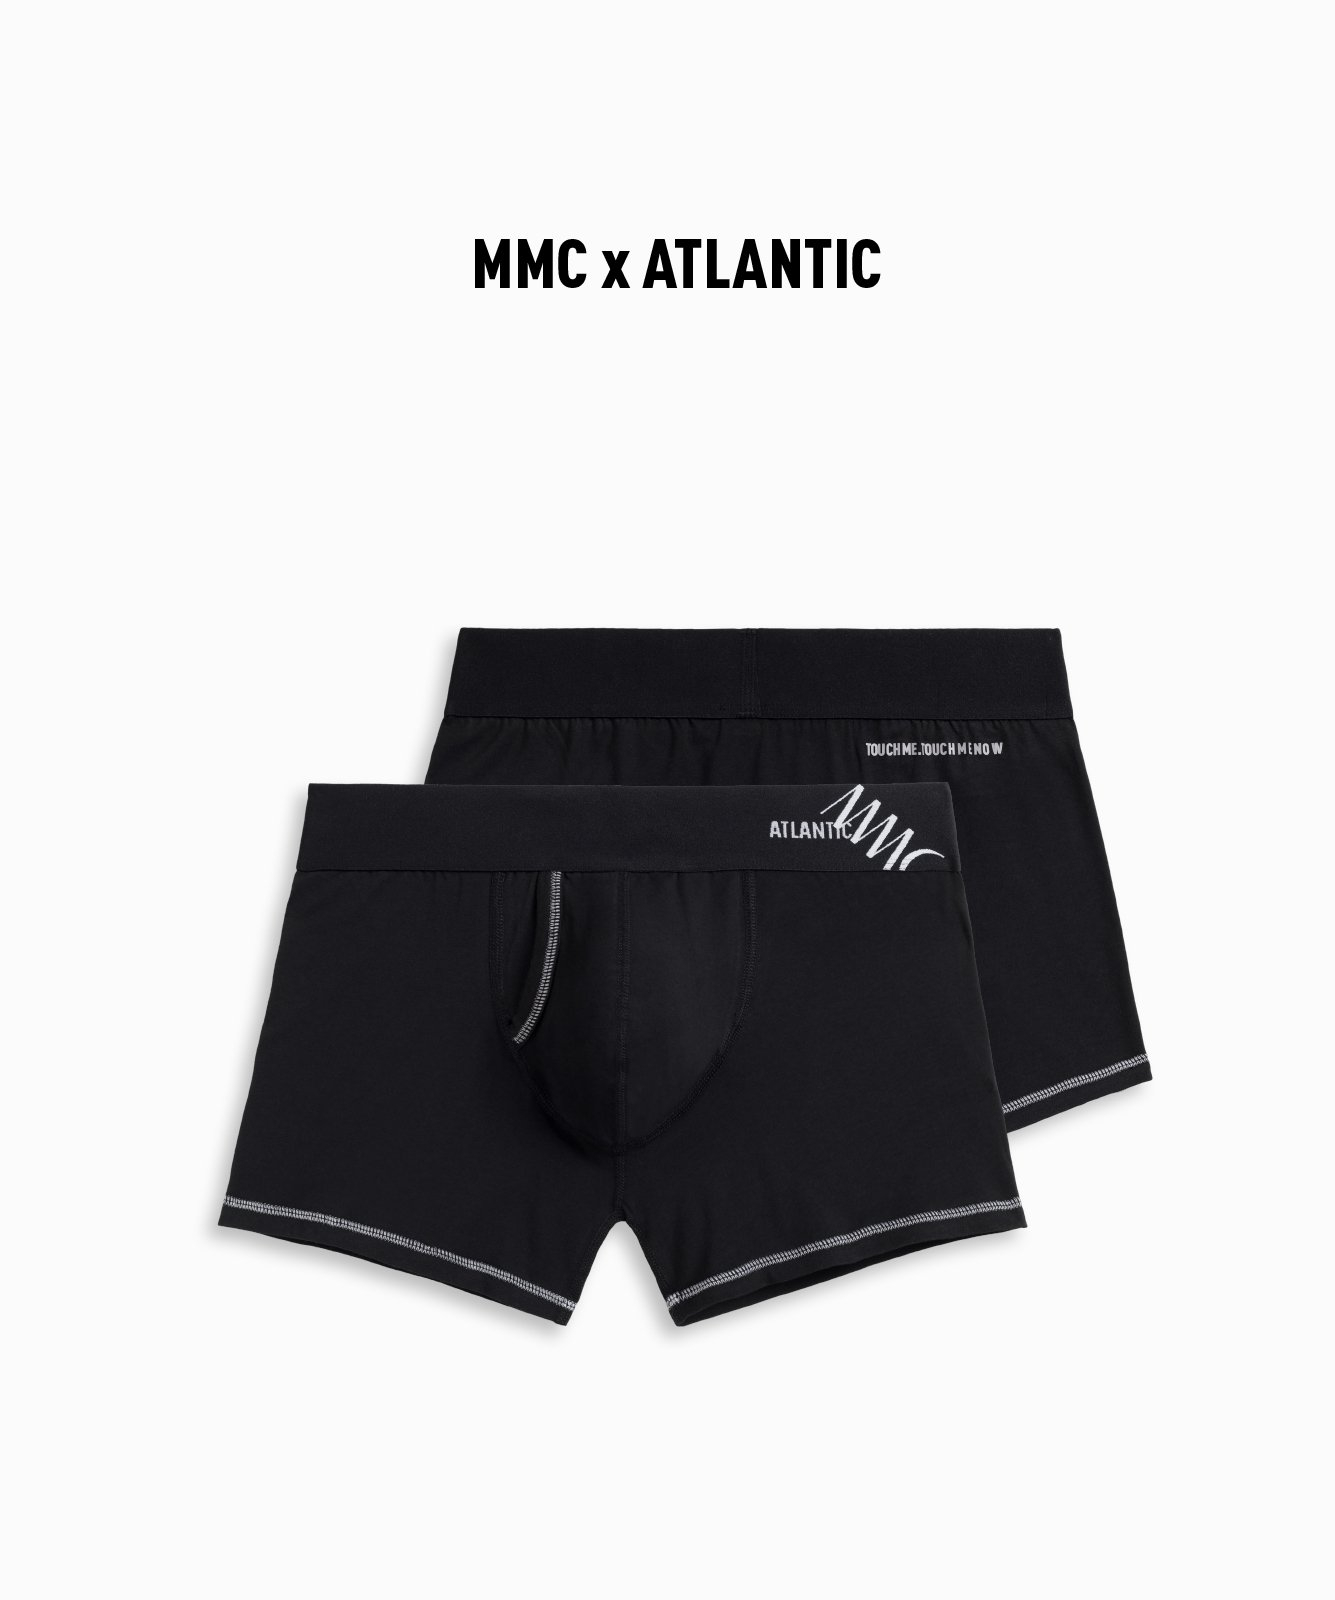 Men's Boxer Shorts MMC x ATLANTIC - Black